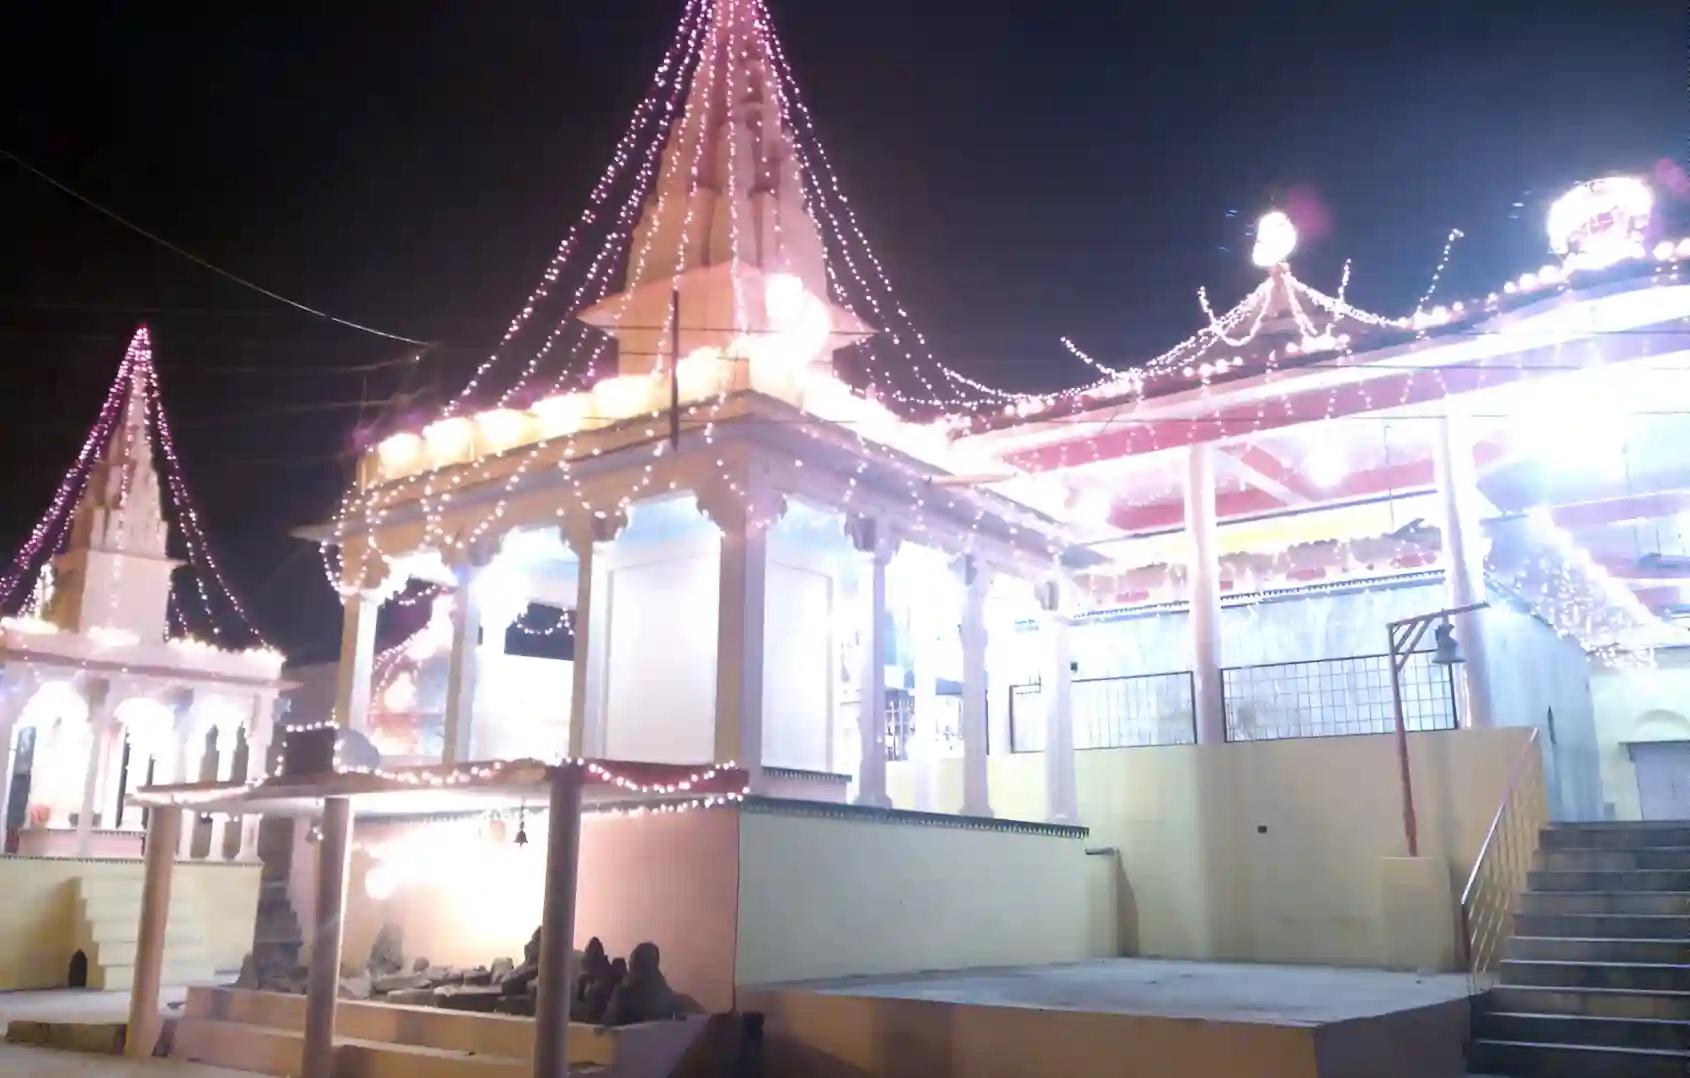 Shri Someshwar Mahadev Temple,Prayagraj, Uttar Pradesh